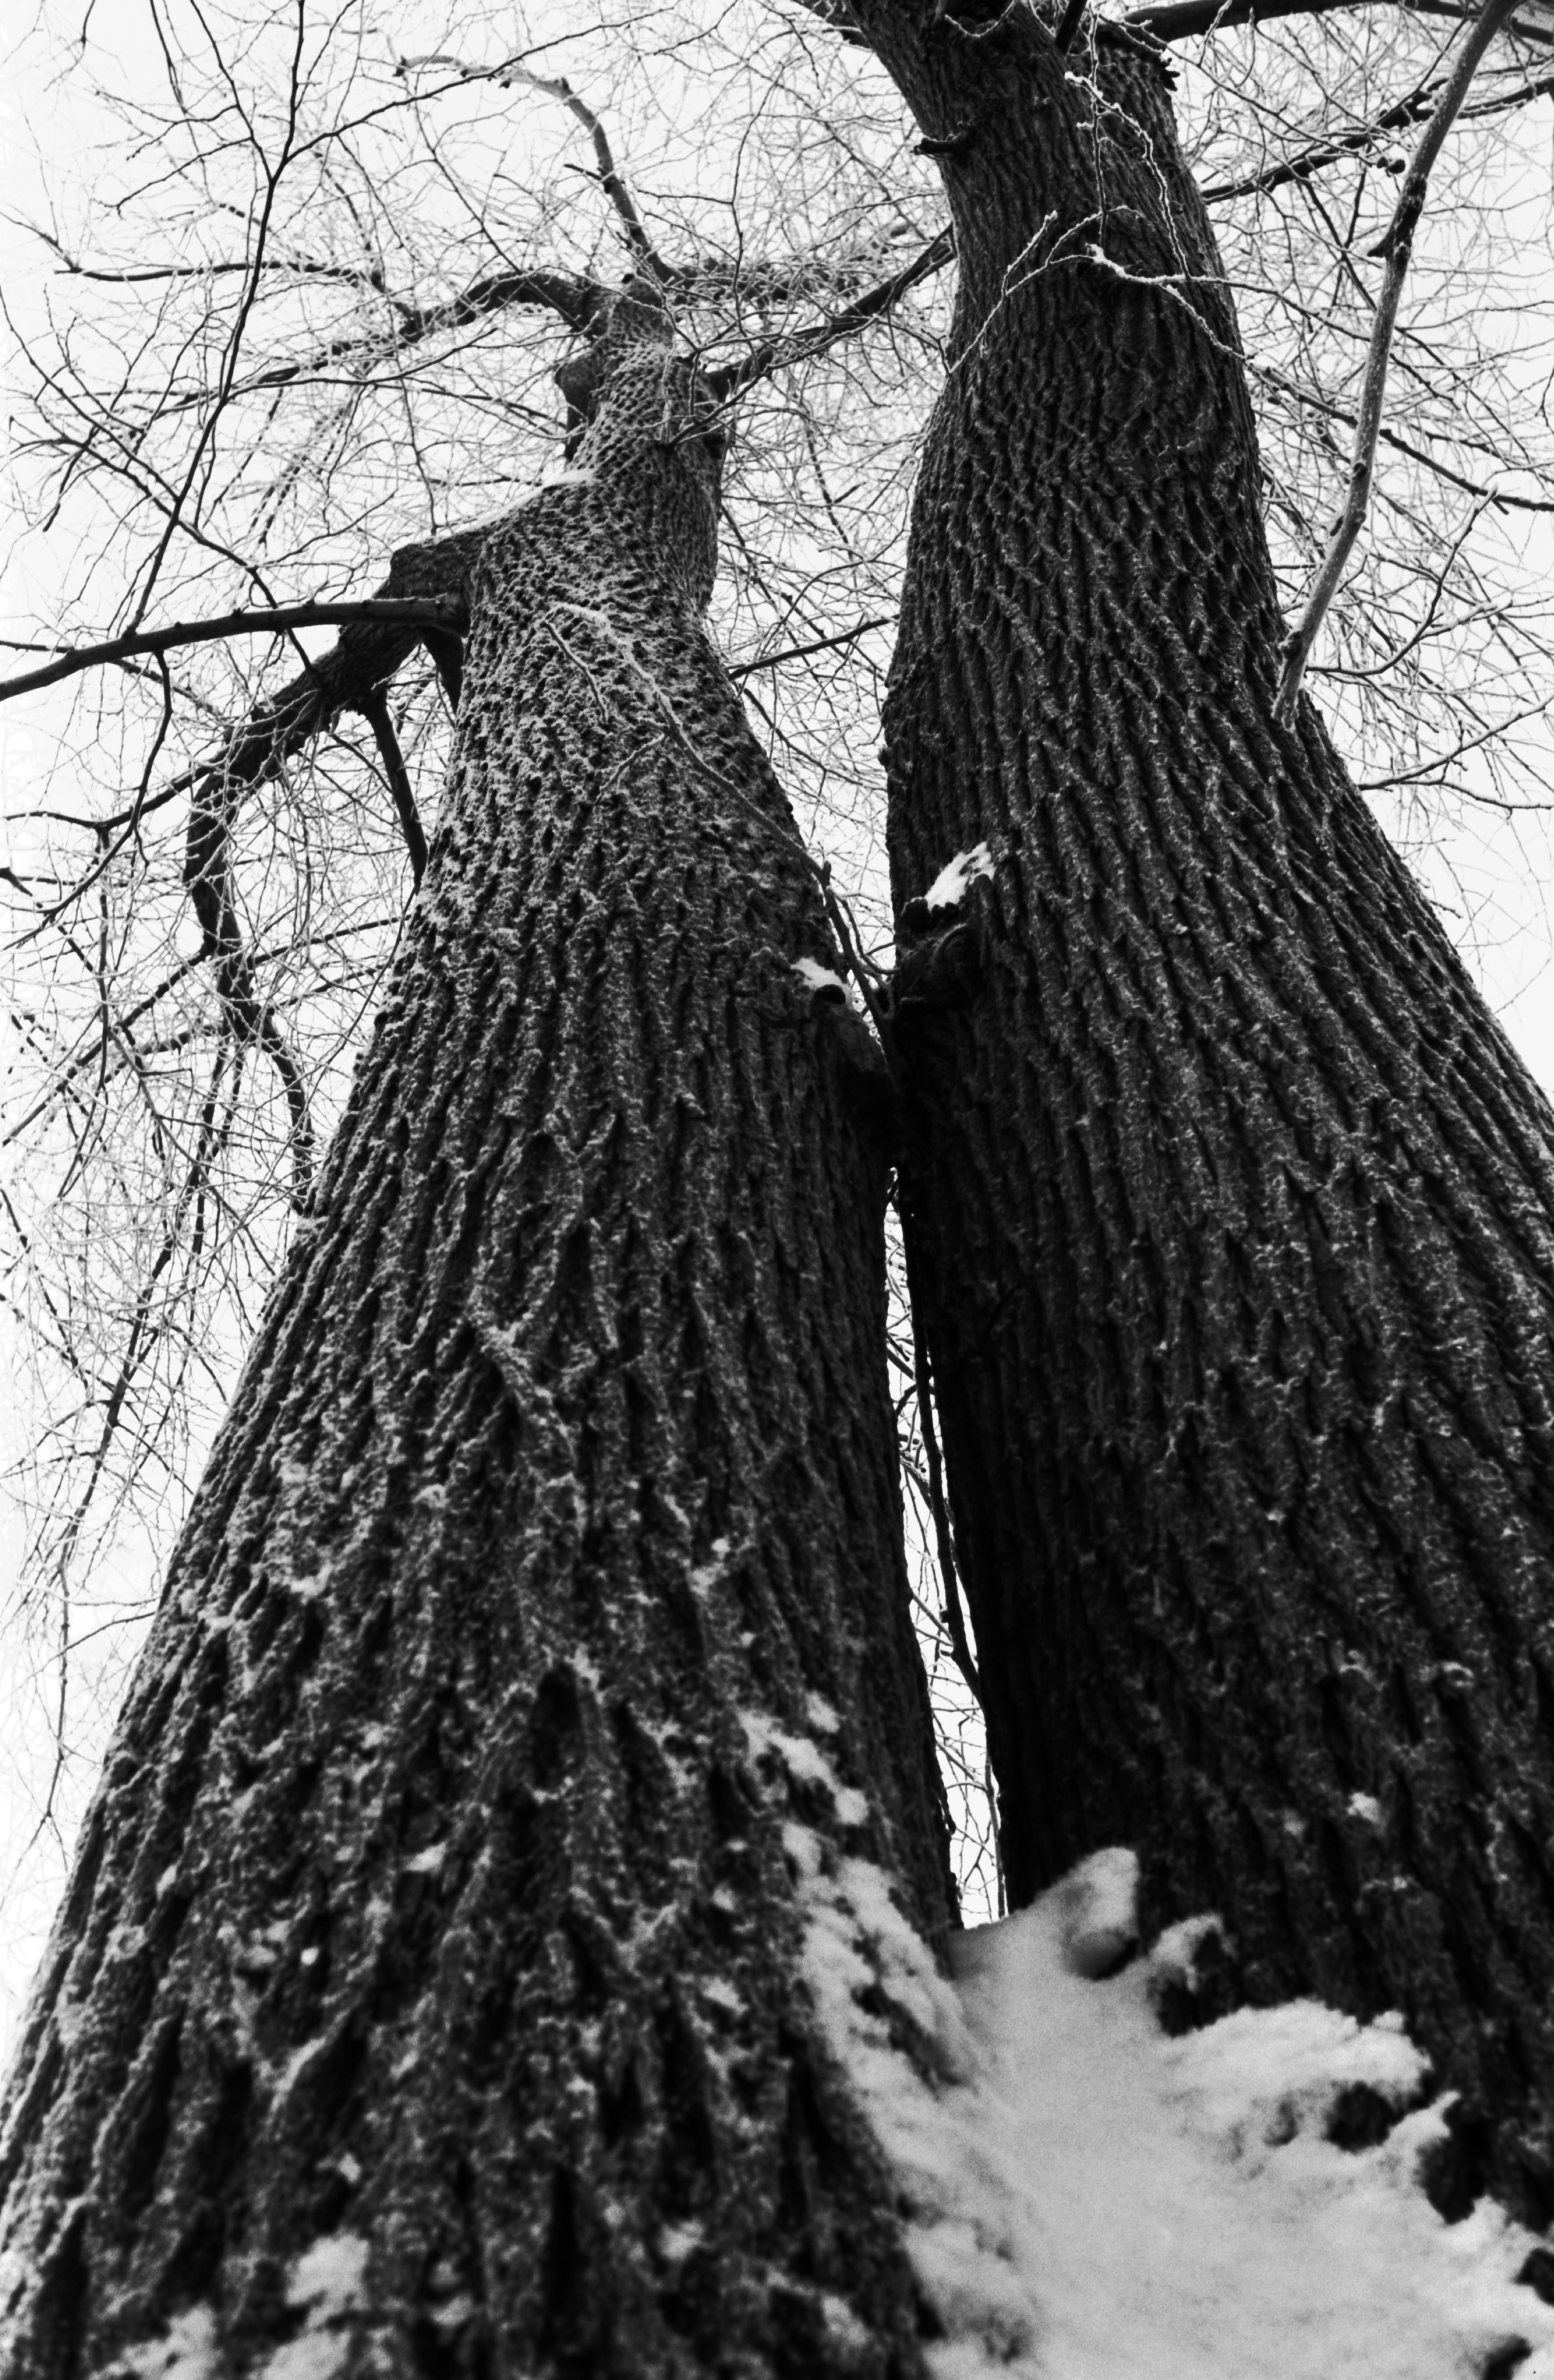 Liisanpuistikko. Luminen, huurteinen kaksihaarainen puunrunko alhaalta latvaan päin kuvattuna Liisanpuistikossa.